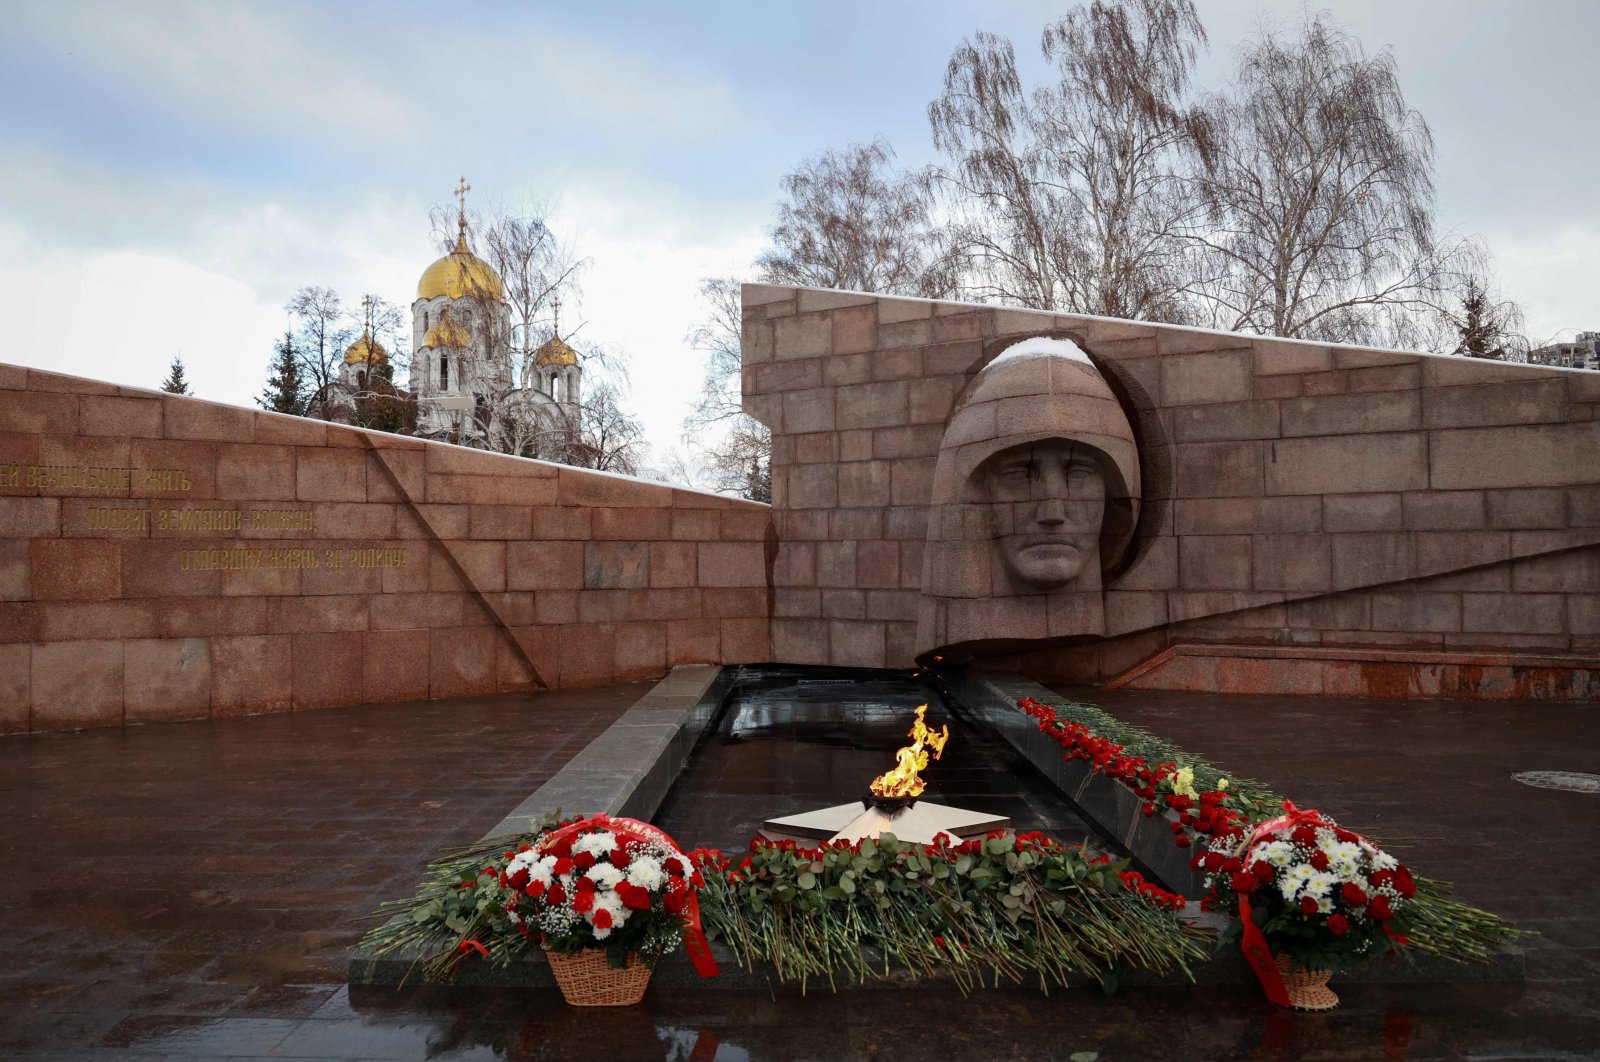 Moskow merevisi kerugian Makiivka karena Kyiv melaporkan lebih banyak kematian Rusia